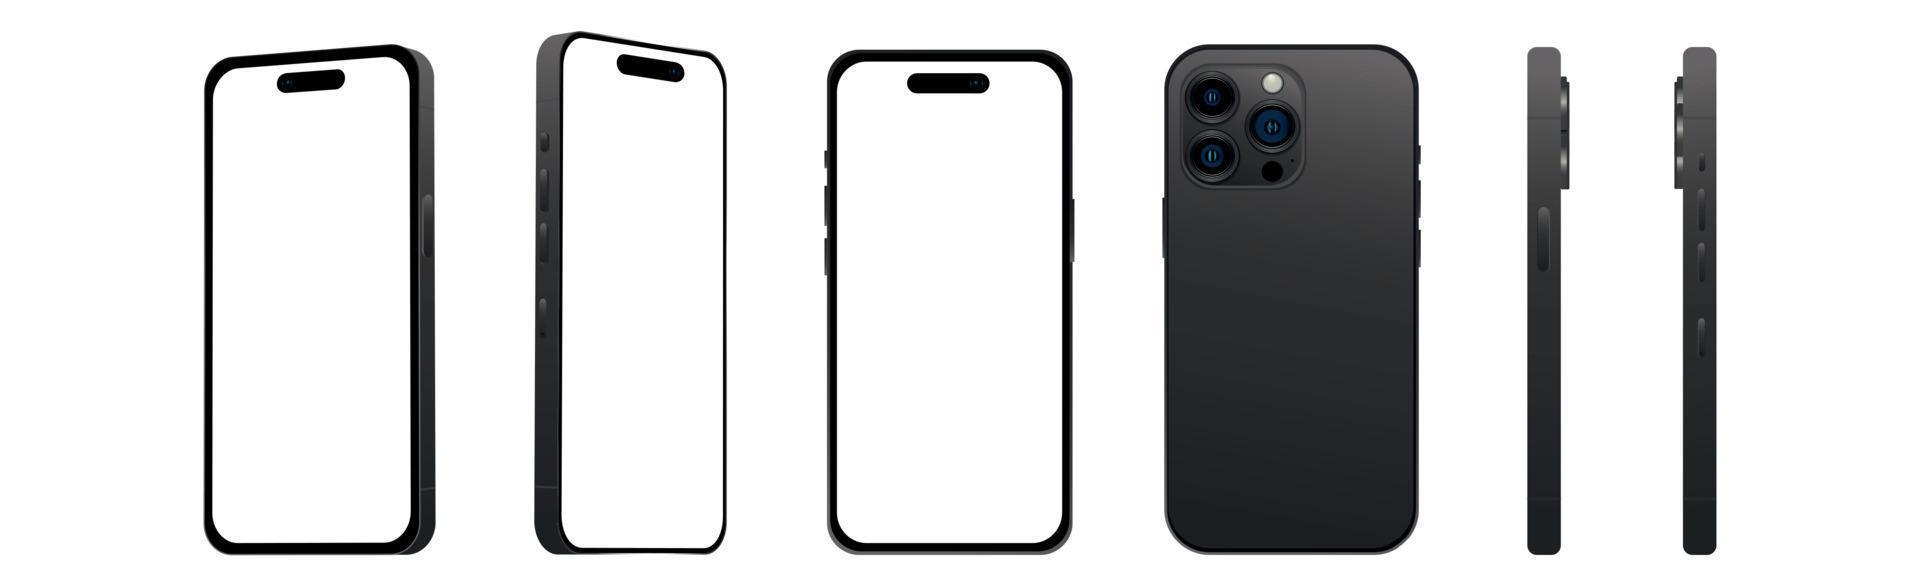 conjunto de 6 pcs ângulos diferentes, modelos pro smartphone preto 14, novidade da indústria de ti, maquete para web design em um fundo branco - vetor